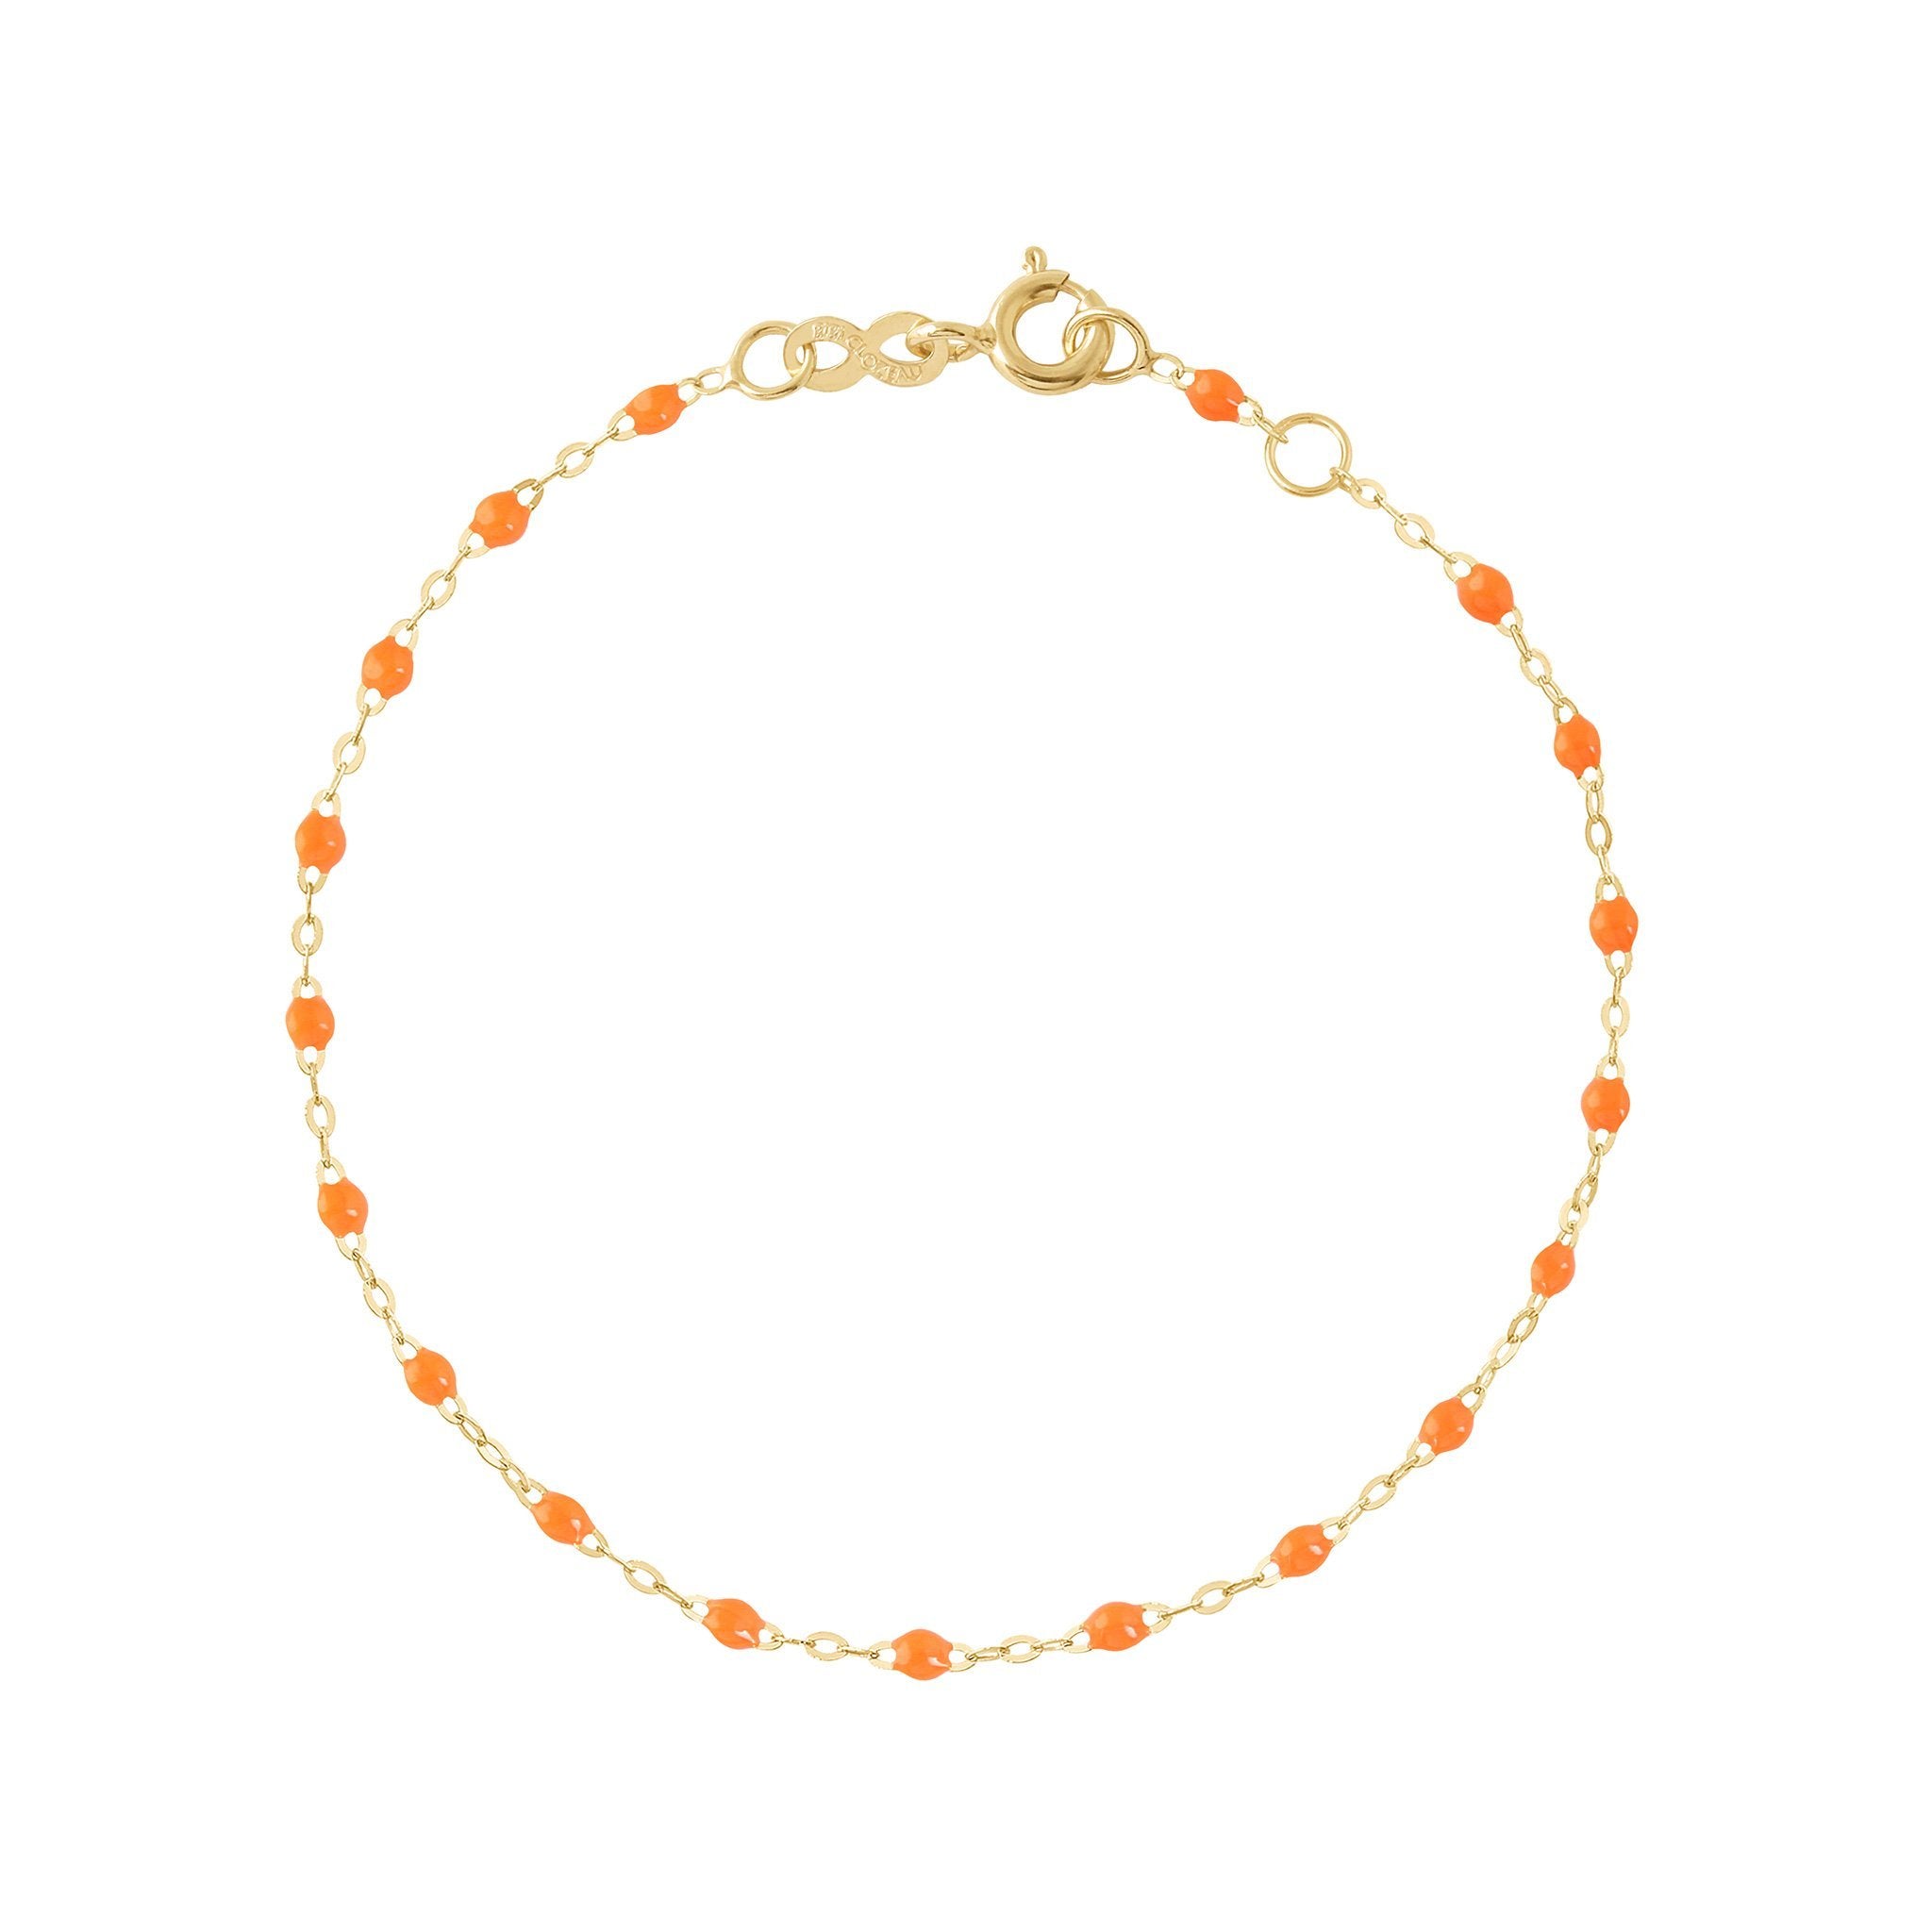 Bracelet orange fluo Classique Gigi, or jaune, 15 cm classique gigi Référence :  b3gi001j1315xx -1